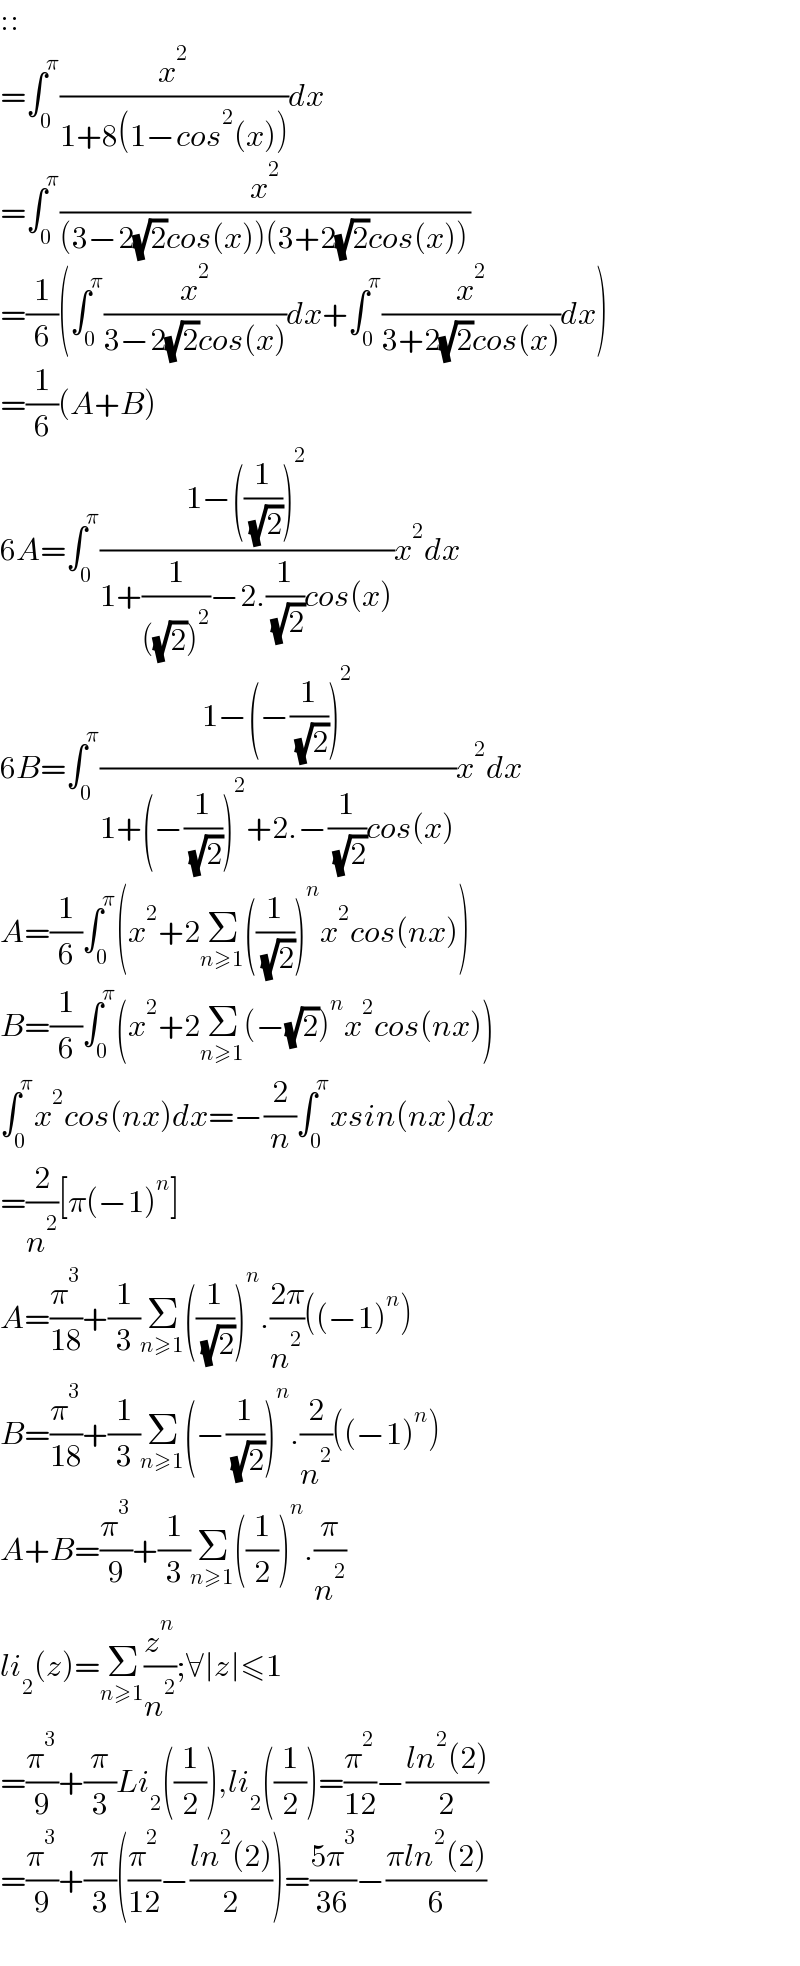 ::  =∫_0 ^π (x^2 /(1+8(1−cos^2 (x))))dx  =∫_0 ^π (x^2 /((3−2(√2)cos(x))(3+2(√2)cos(x))))  =(1/6)(∫_0 ^π (x^2 /(3−2(√2)cos(x)))dx+∫_0 ^π (x^2 /(3+2(√2)cos(x)))dx)  =(1/6)(A+B)  6A=∫_0 ^π ((1−((1/( (√2))))^2 )/(1+(1/(((√2))^2 ))−2.(1/( (√2)))cos(x)))x^2 dx  6B=∫_0 ^π ((1−(−(1/( (√2))))^2 )/(1+(−(1/( (√2))))^2 +2.−(1/( (√2)))cos(x)))x^2 dx  A=(1/6)∫_0 ^π (x^2 +2Σ_(n≥1) ((1/( (√2))))^n x^2 cos(nx))  B=(1/6)∫_0 ^π (x^2 +2Σ_(n≥1) (−(√2))^n x^2 cos(nx))  ∫_0 ^π x^2 cos(nx)dx=−(2/n)∫_0 ^π xsin(nx)dx  =(2/n^2 )[π(−1)^n ]  A=(π^3 /(18))+(1/3)Σ_(n≥1) ((1/( (√2))))^n .((2π)/n^2 )((−1)^n )  B=(π^3 /(18))+(1/3)Σ_(n≥1) (−(1/( (√2))))^n .(2/n^2 )((−1)^n )  A+B=(π^3 /9)+(1/3)Σ_(n≥1) ((1/2))^n .(π/n^2 )  li_2 (z)=Σ_(n≥1) (z^n /n^2 );∀∣z∣≤1  =(π^3 /9)+(π/3)Li_2 ((1/2)),li_2 ((1/2))=(π^2 /(12))−((ln^2 (2))/2)  =(π^3 /9)+(π/3)((π^2 /(12))−((ln^2 (2))/2))=((5π^3 )/(36))−((πln^2 (2))/6)    